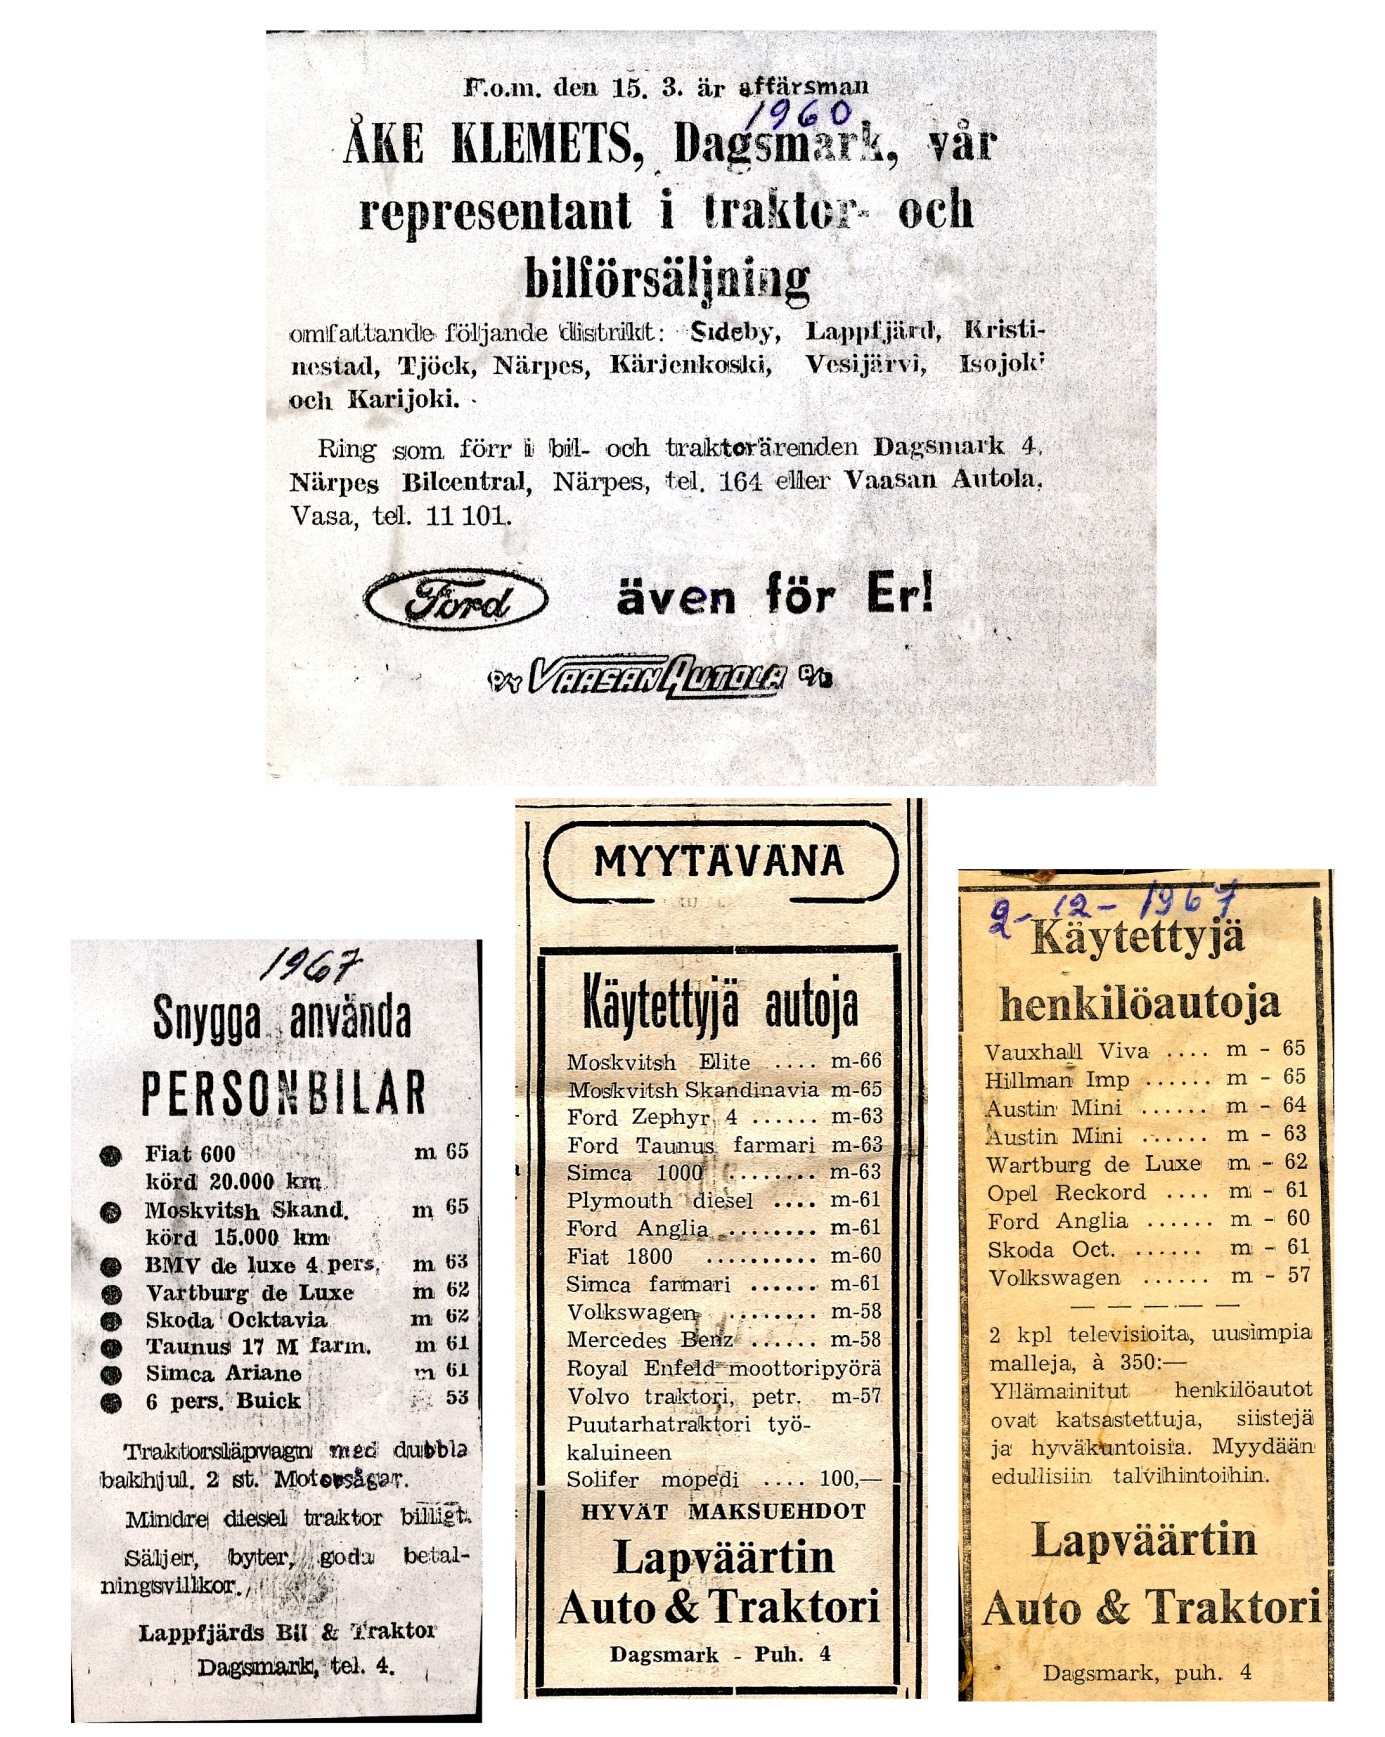 Åke Klemets annonserade flitigt i de lokala tidningarna på 1960-talet. År 1960 blev han till och med områdesrepresentant för Fords personbilar och traktorer.